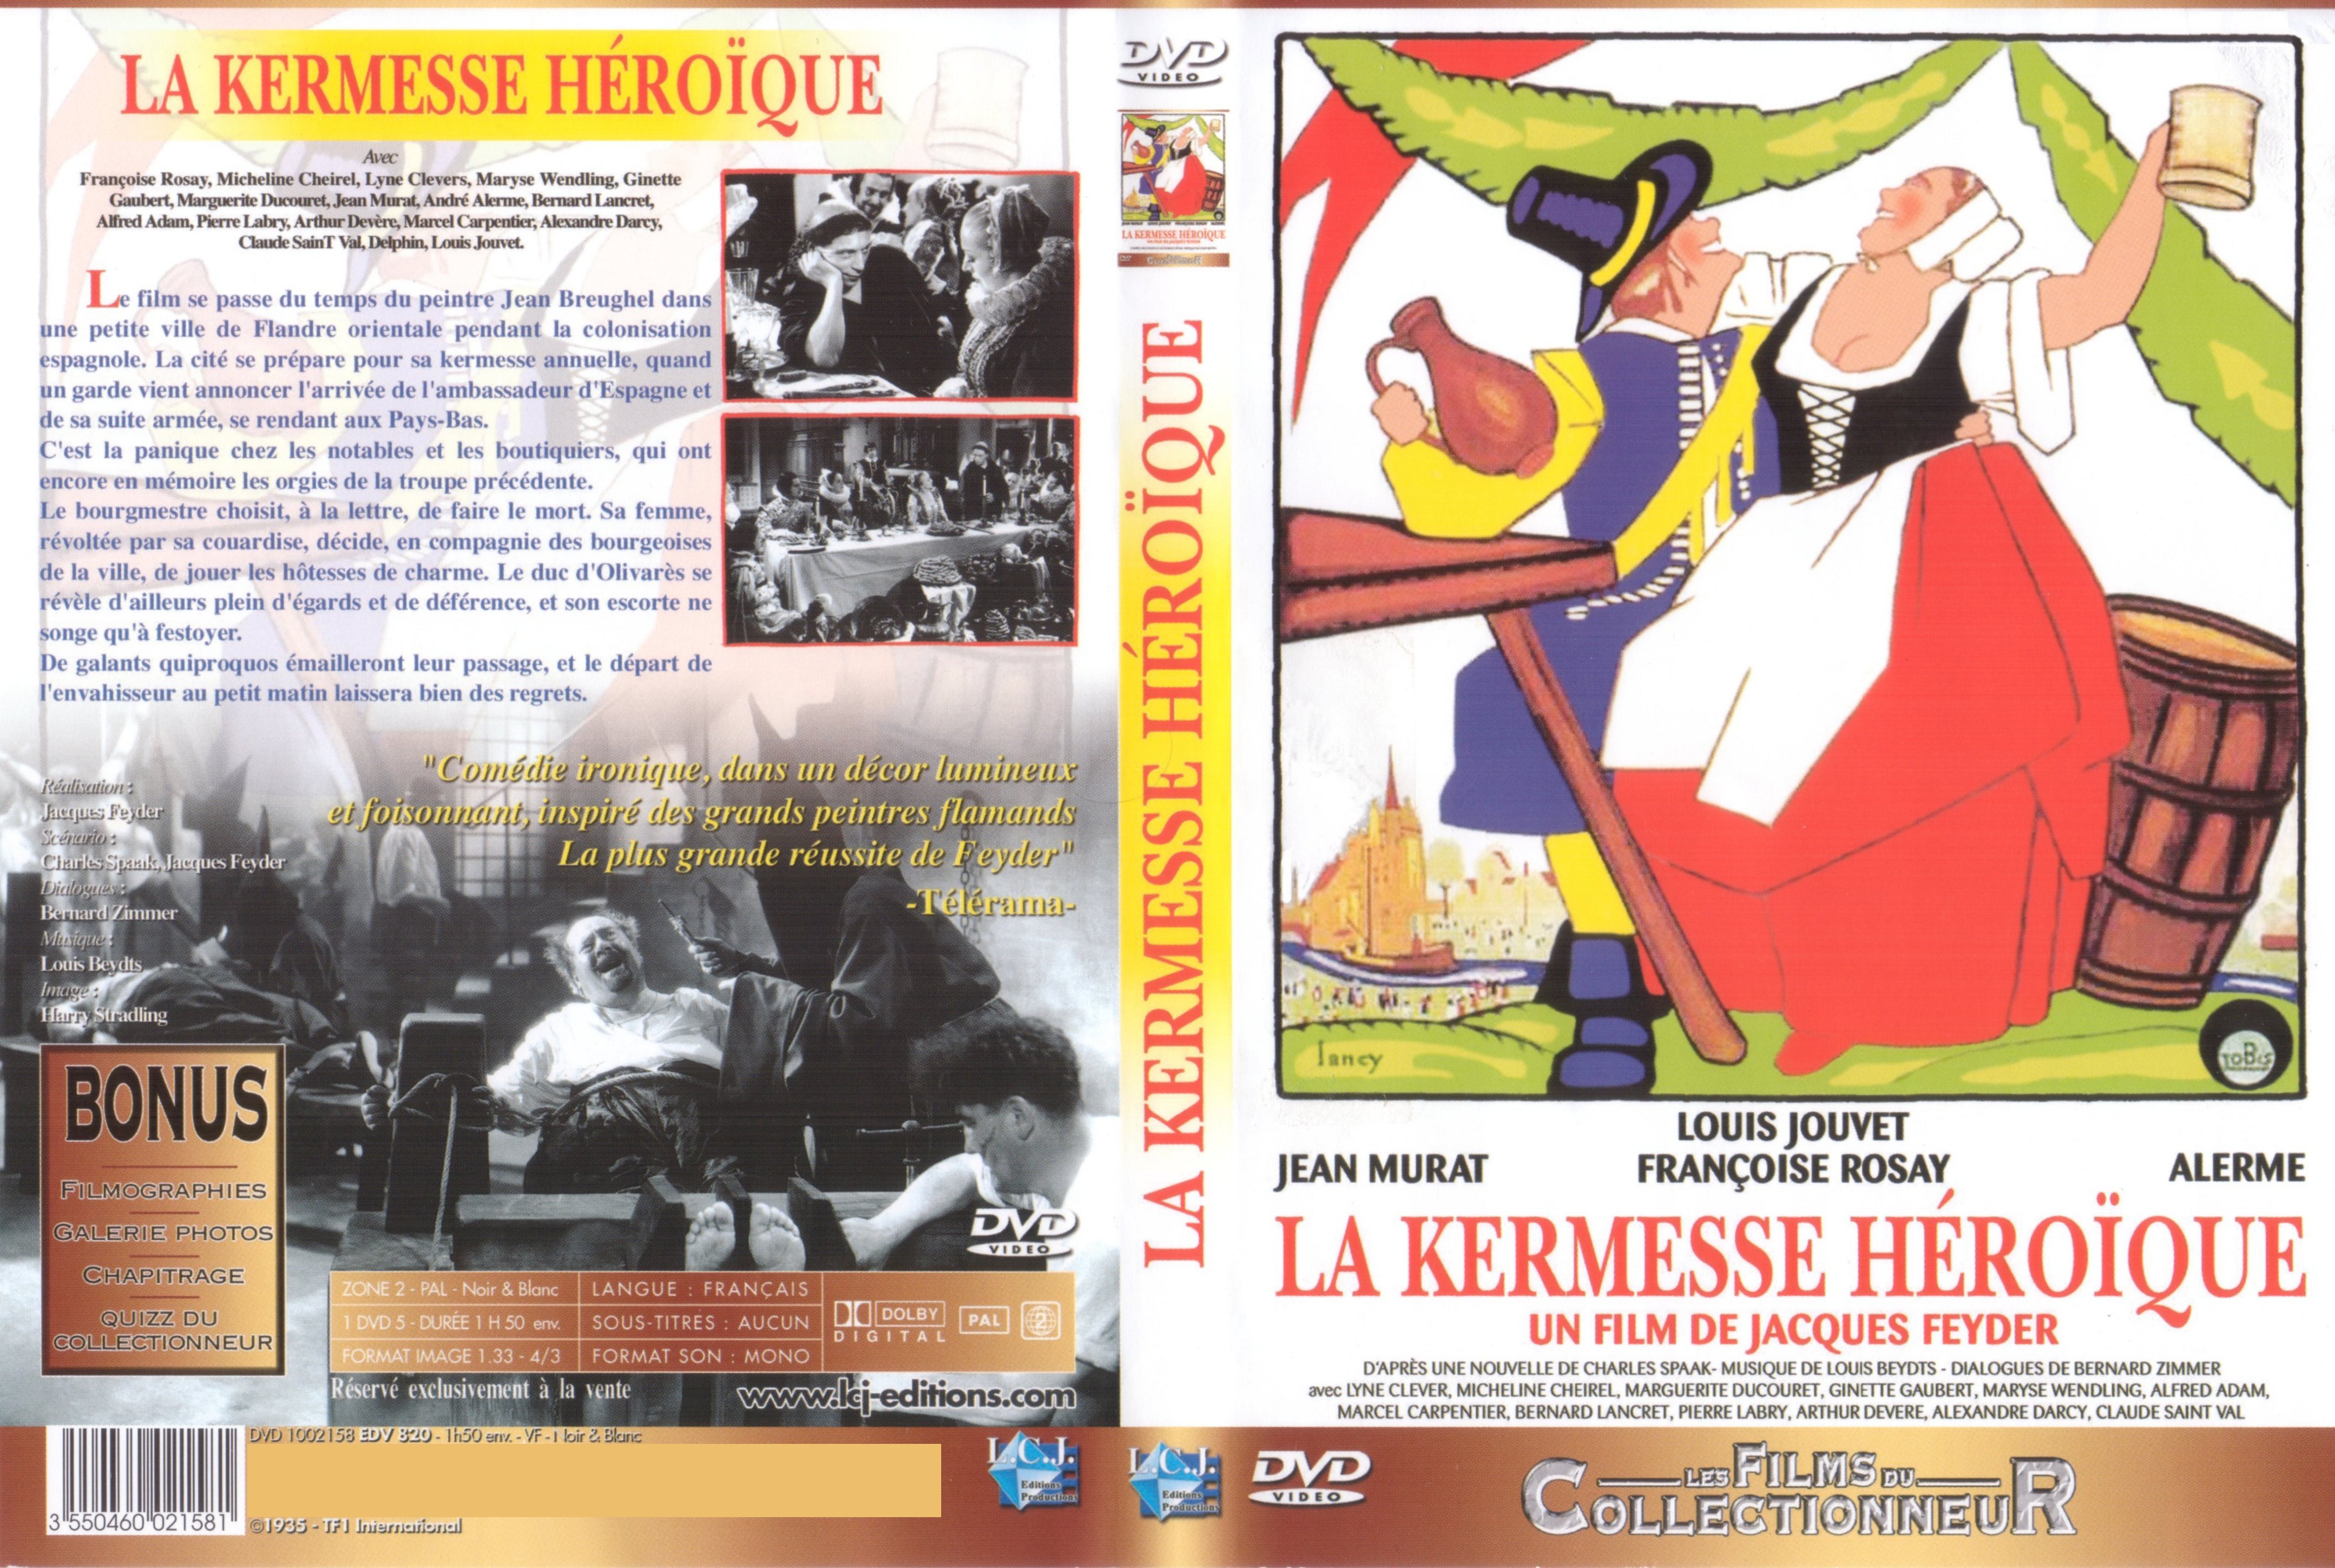 Jaquette DVD La kermesse heroique